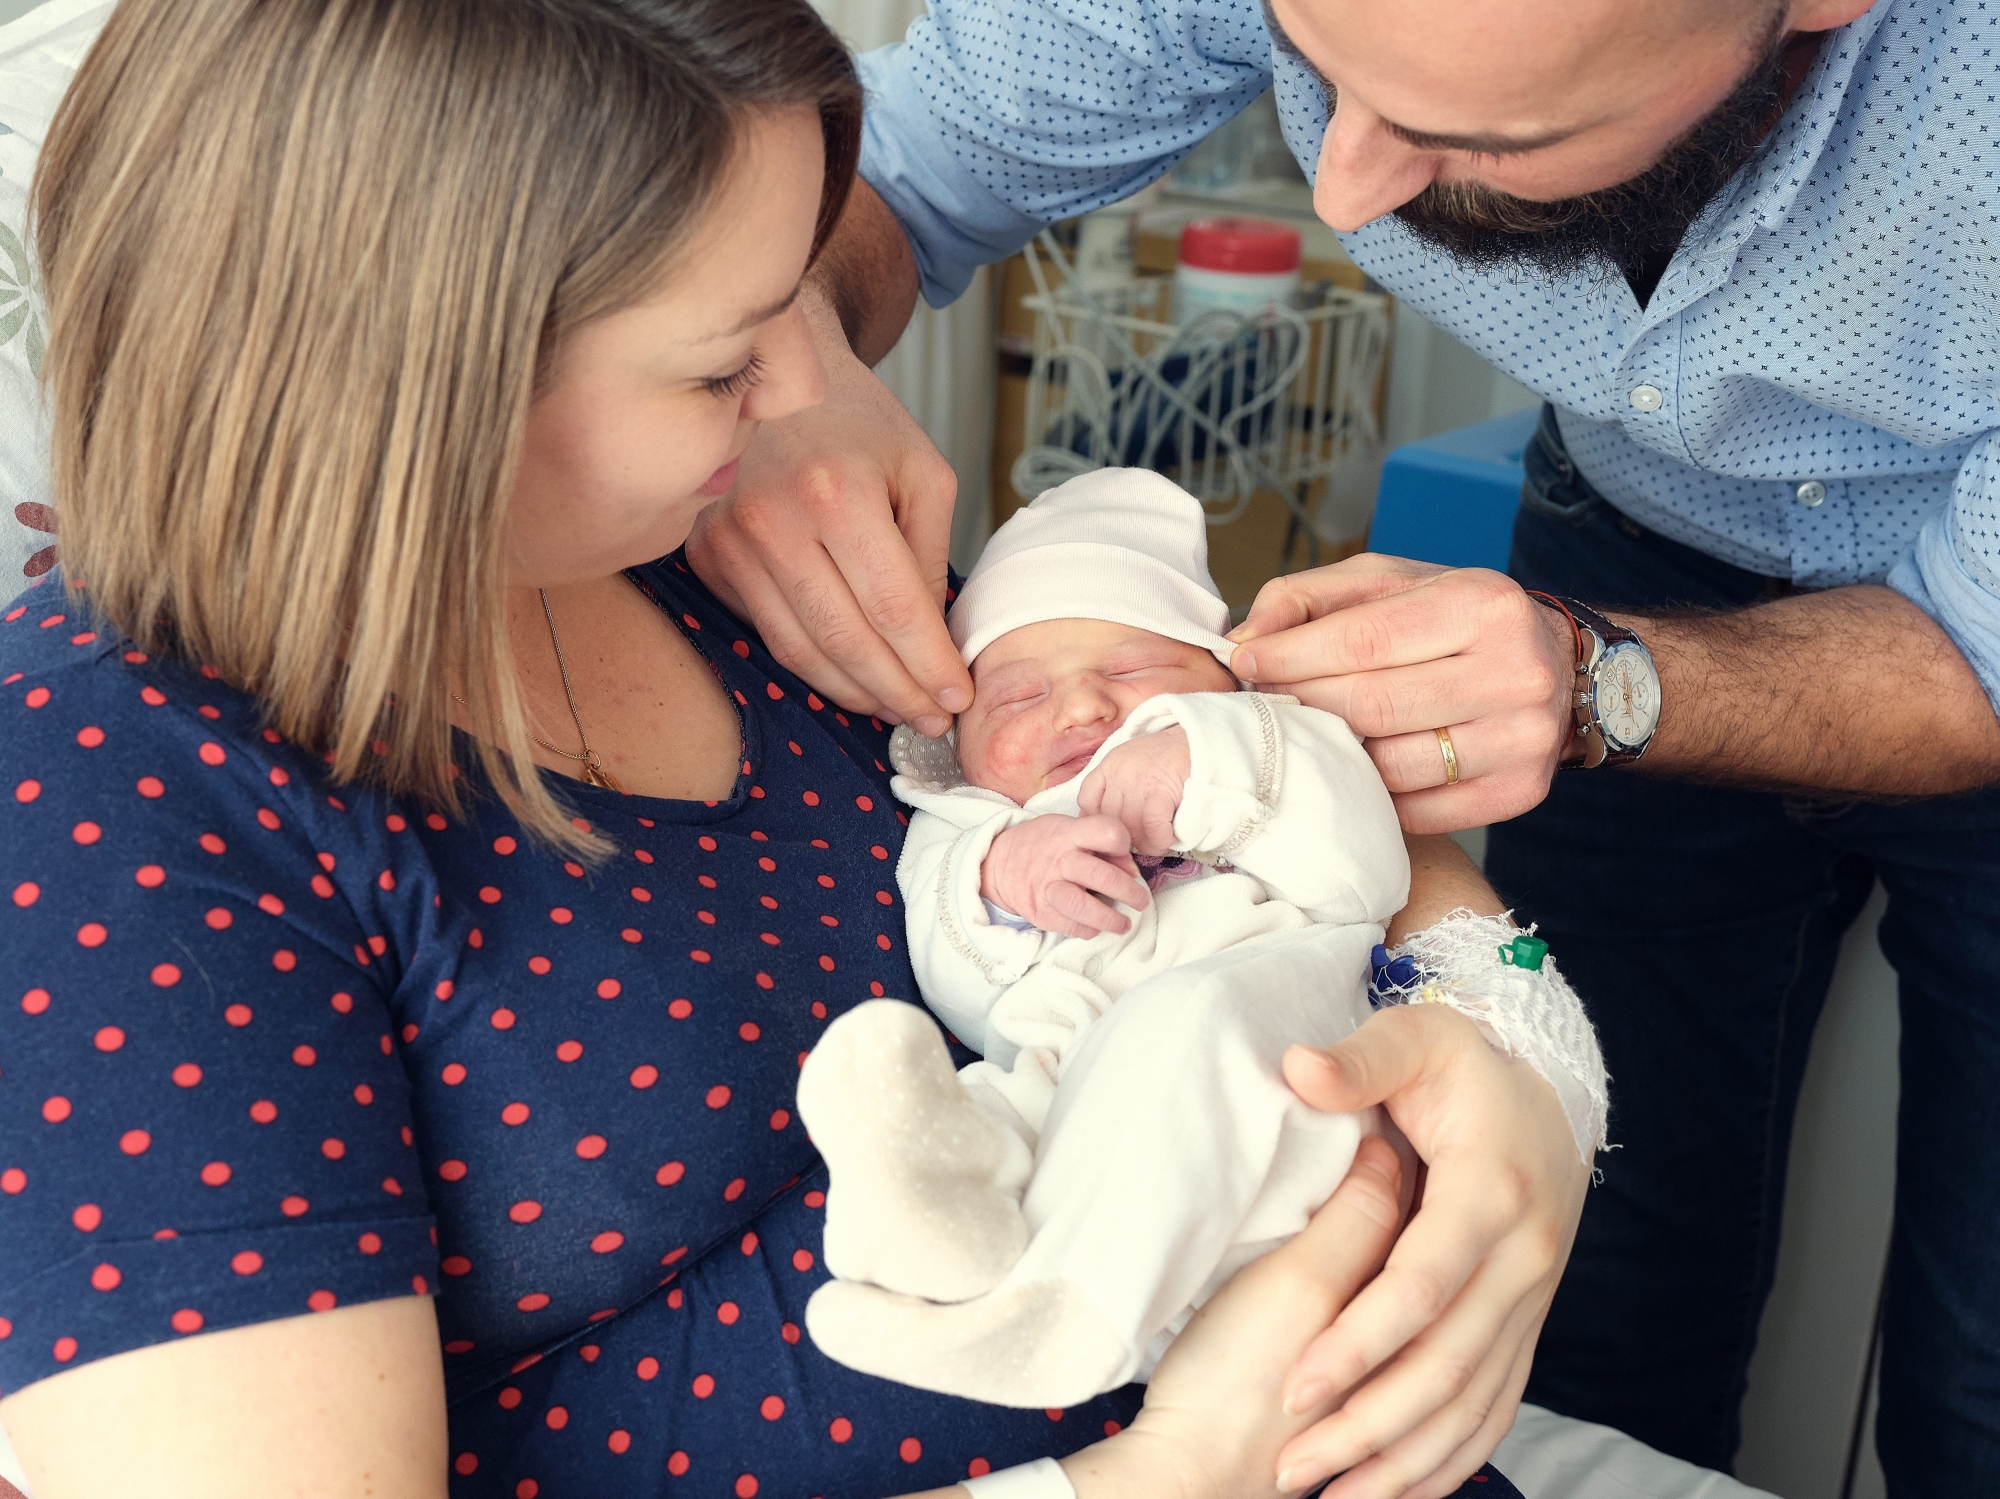 Le premier bébé neuchâtelois de l'année est une petite fille qui se prénomme Elisa. Elle est née a l'hôpital de Pourtalès, à Neuchâtel, à 6h41 le 1er janvier 2019.